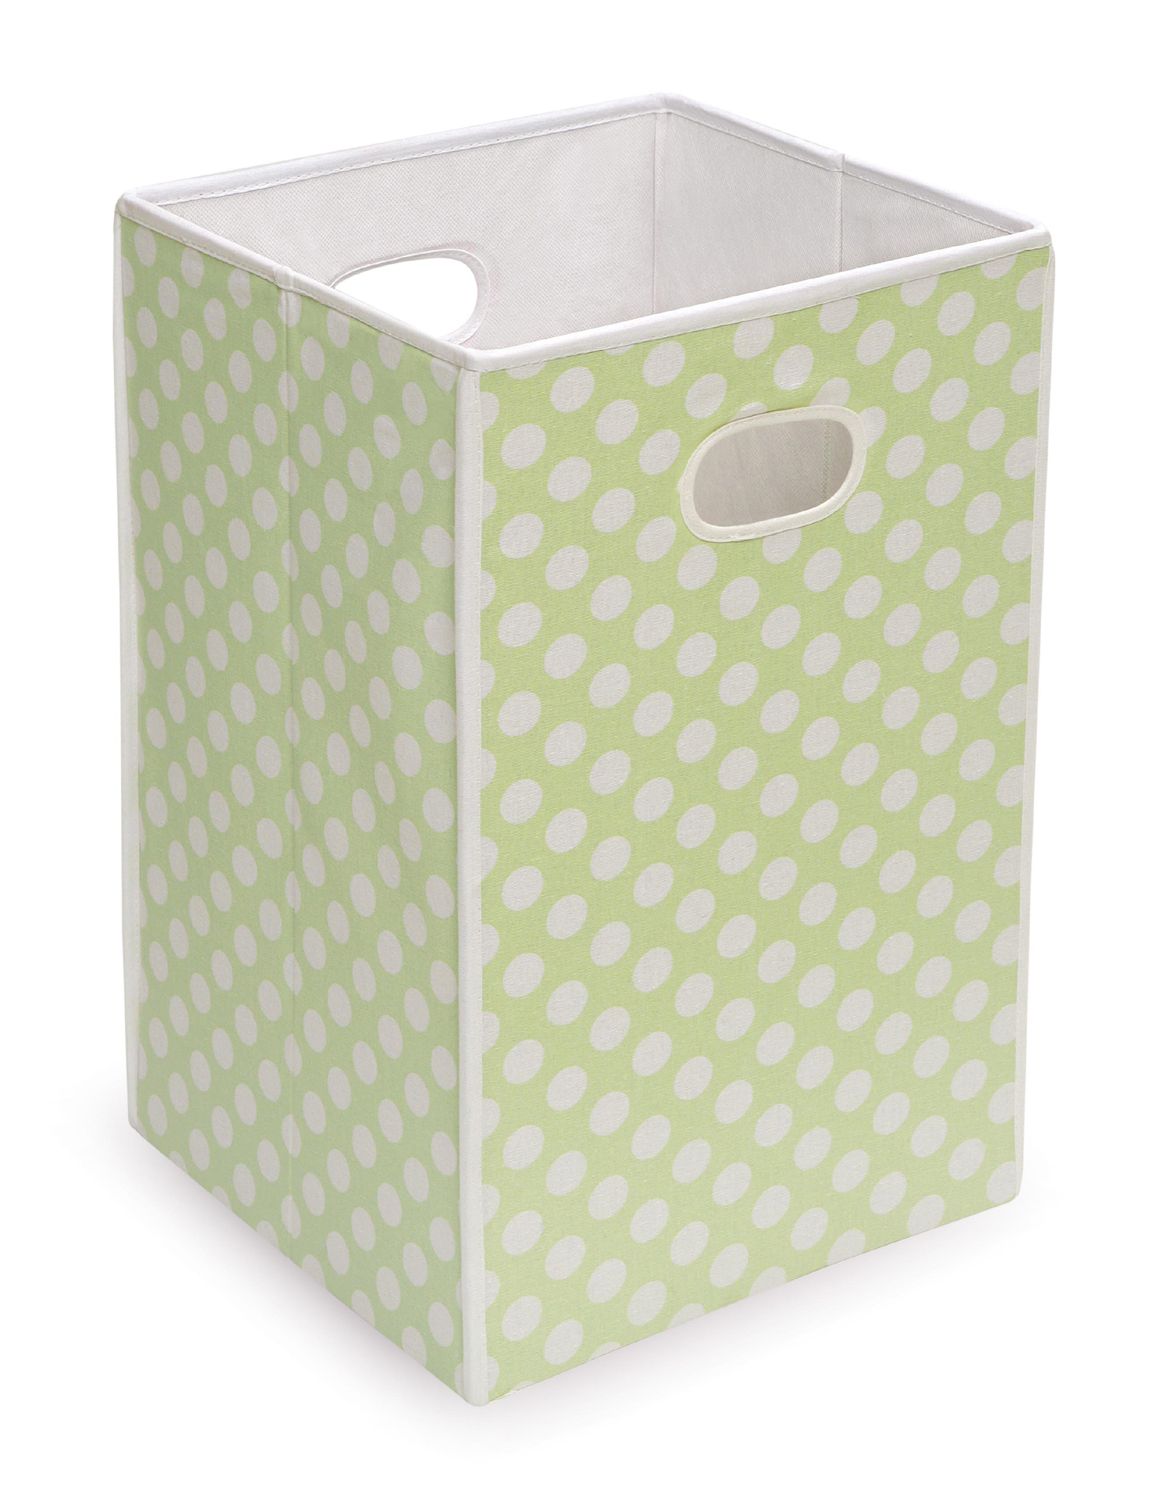 Badger Basket - Folding Hamper/Storage Bin, Sage with White Polka Dots